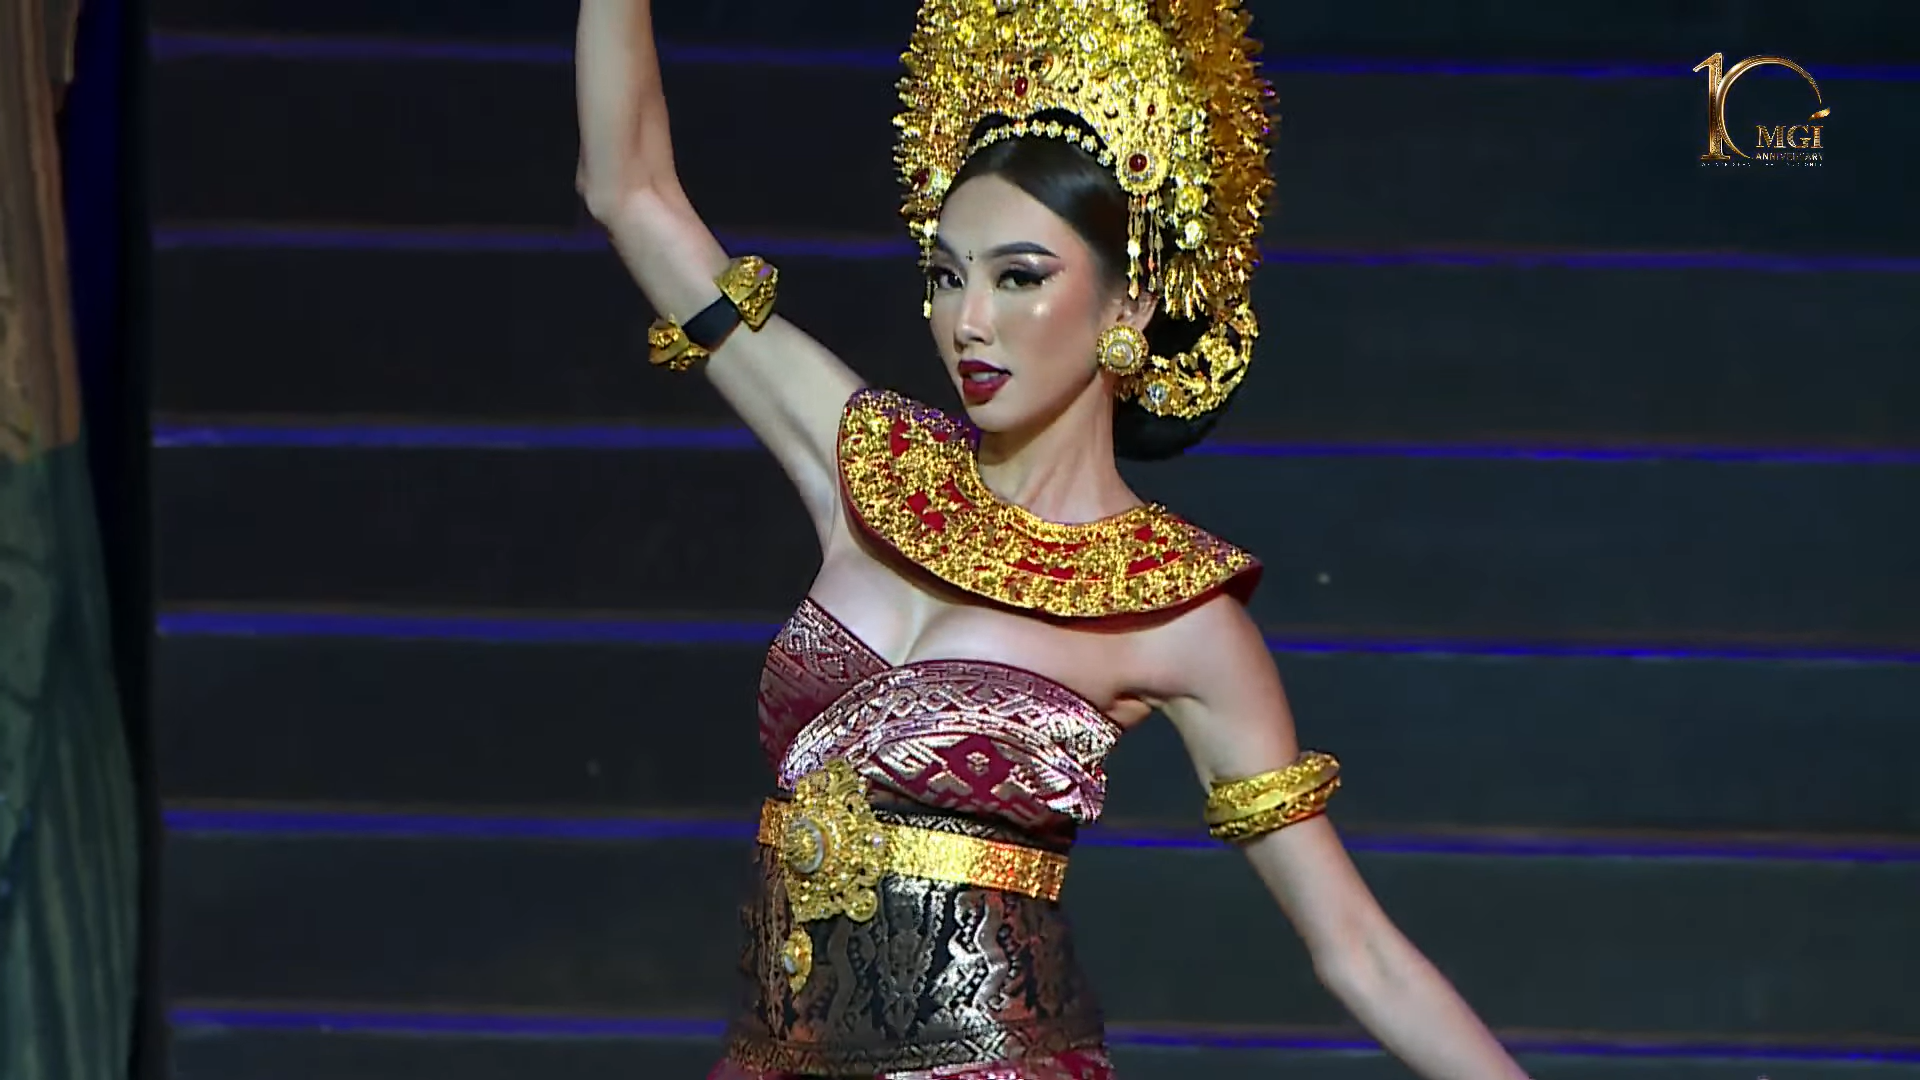 Hoa hậu Thùy Tiên đẹp “xuất thần” trong trang phục truyền thống Bali, Hoa hậu Thiên  Ân hoàn thành phần thi đầy trọn vẹn - ảnh 3